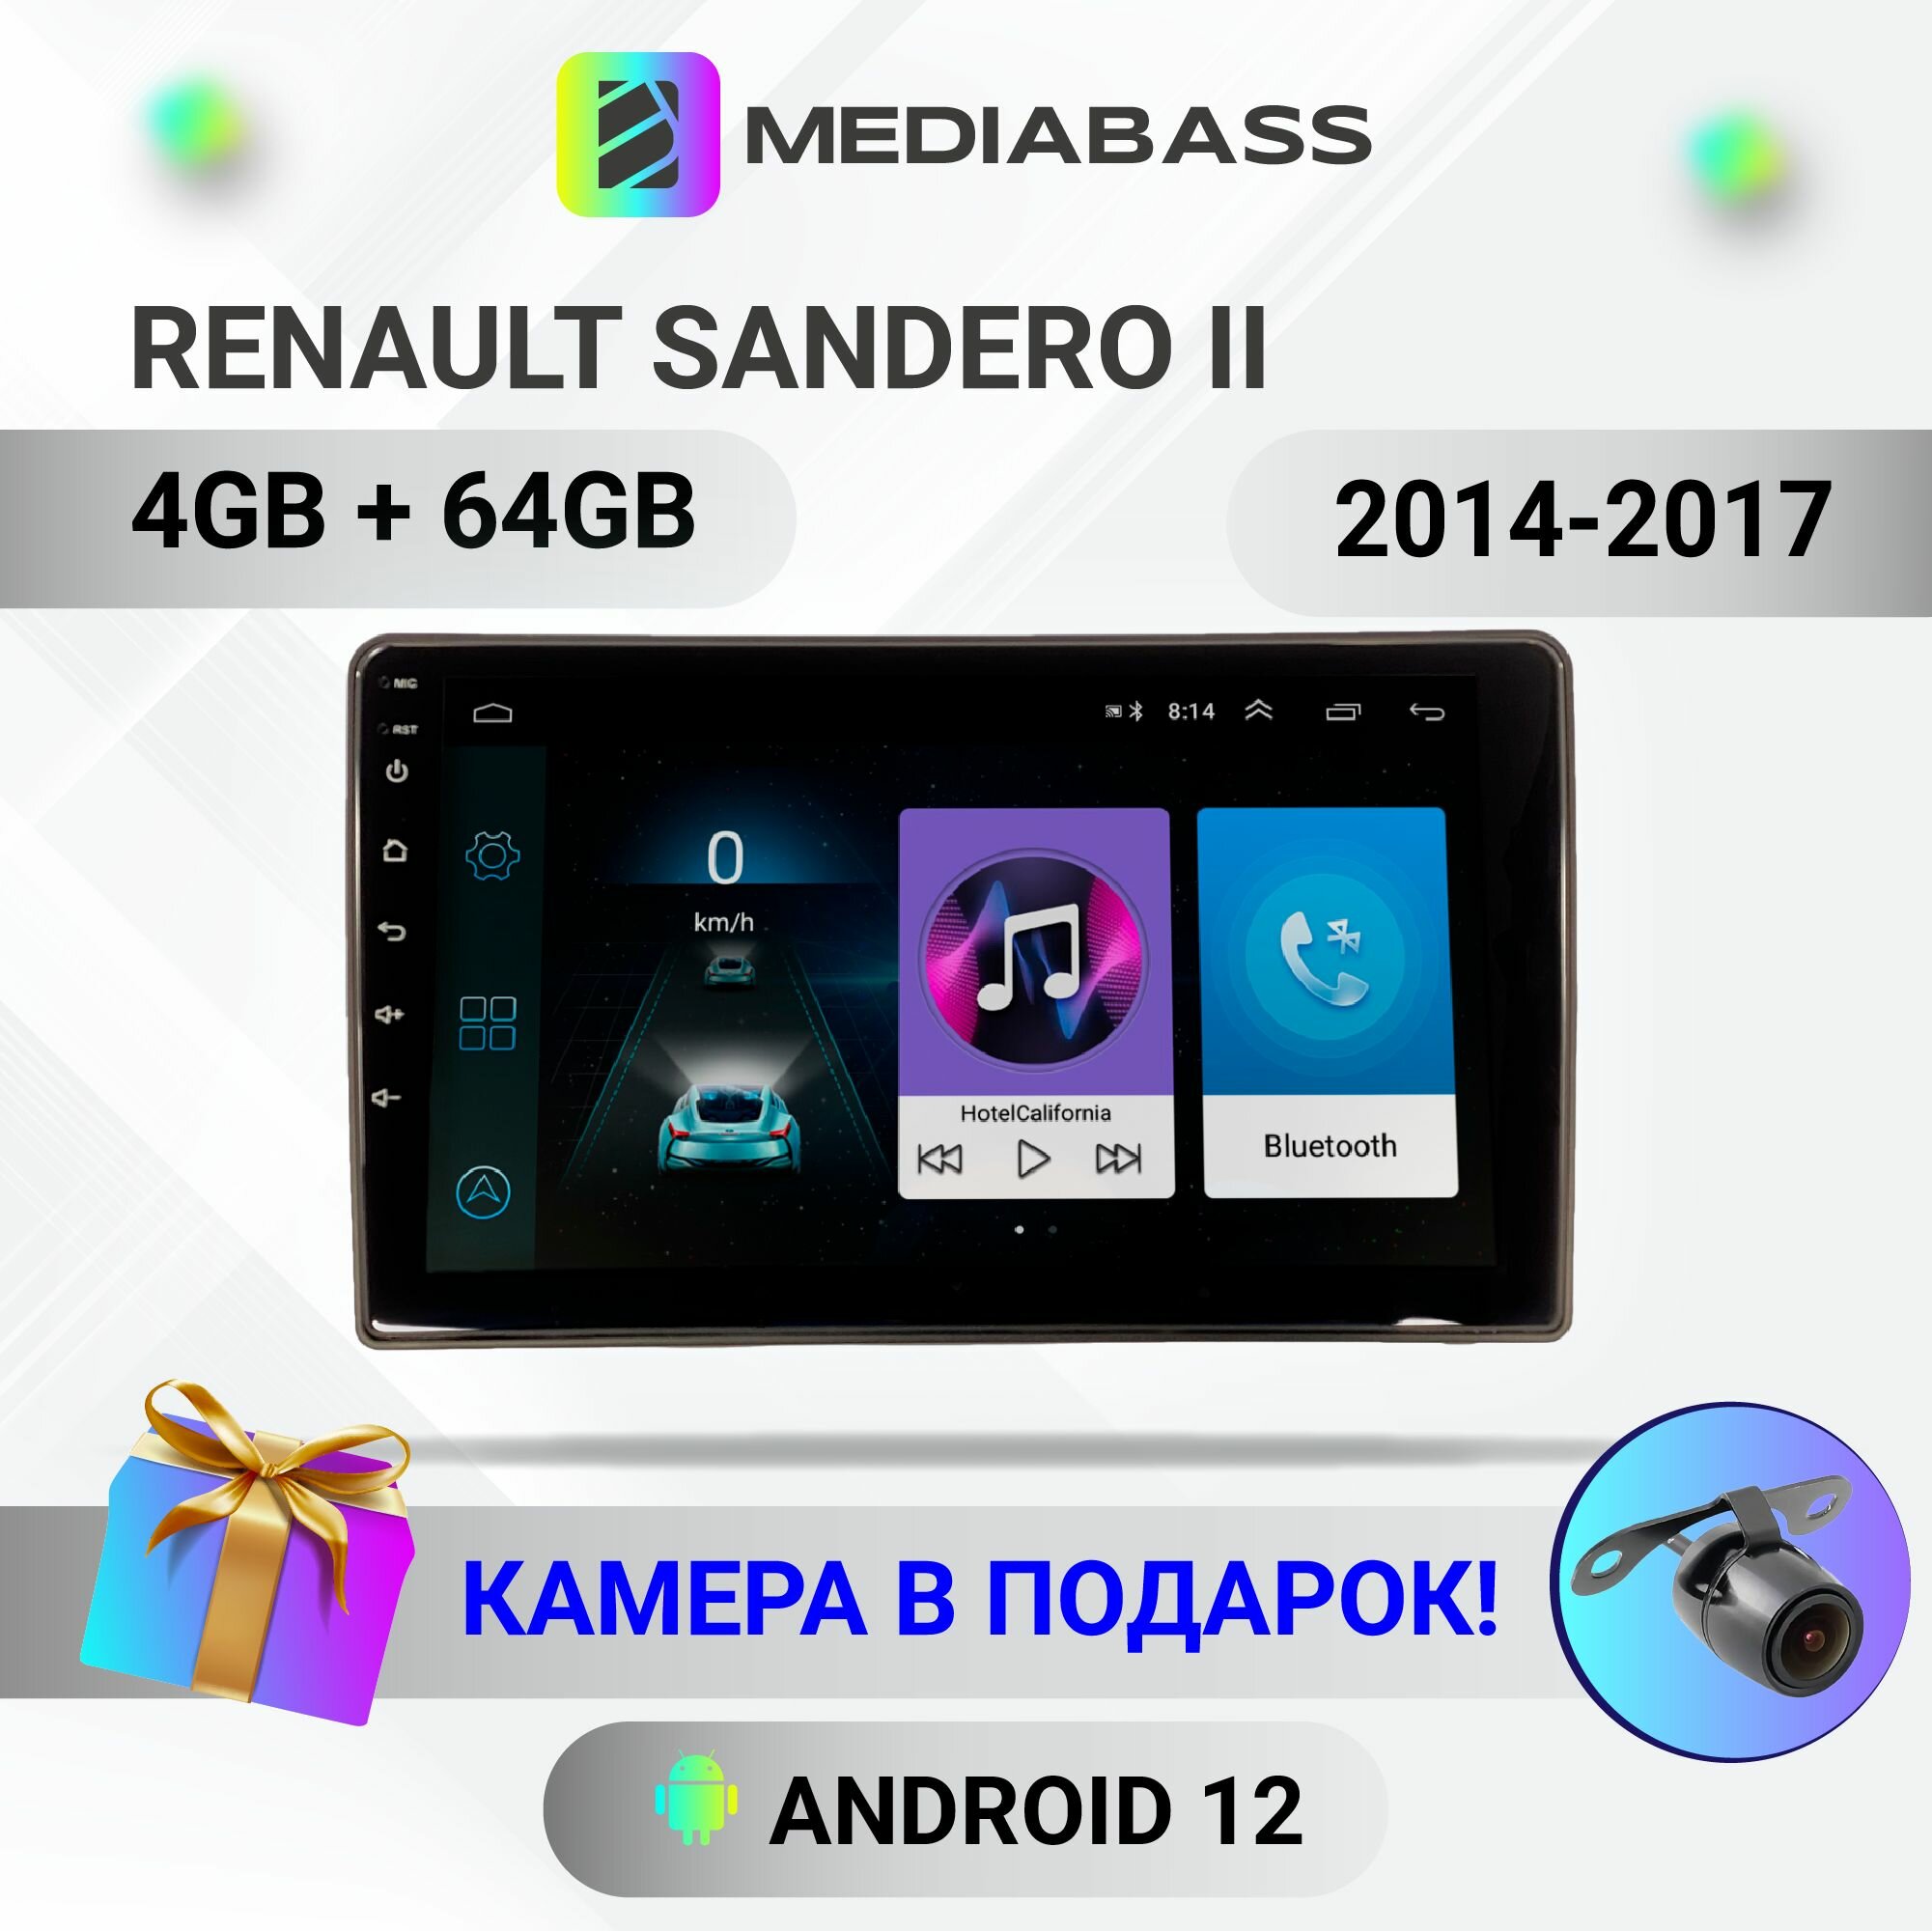 Автомагнитола Mediabass Renault Sandero 2 (кроме мин-й компл), Android 12, 4/64GB, 8-ядерный процессор, DSP, 4G модем, чип-усилитель TDA7851 / Рено Дастер